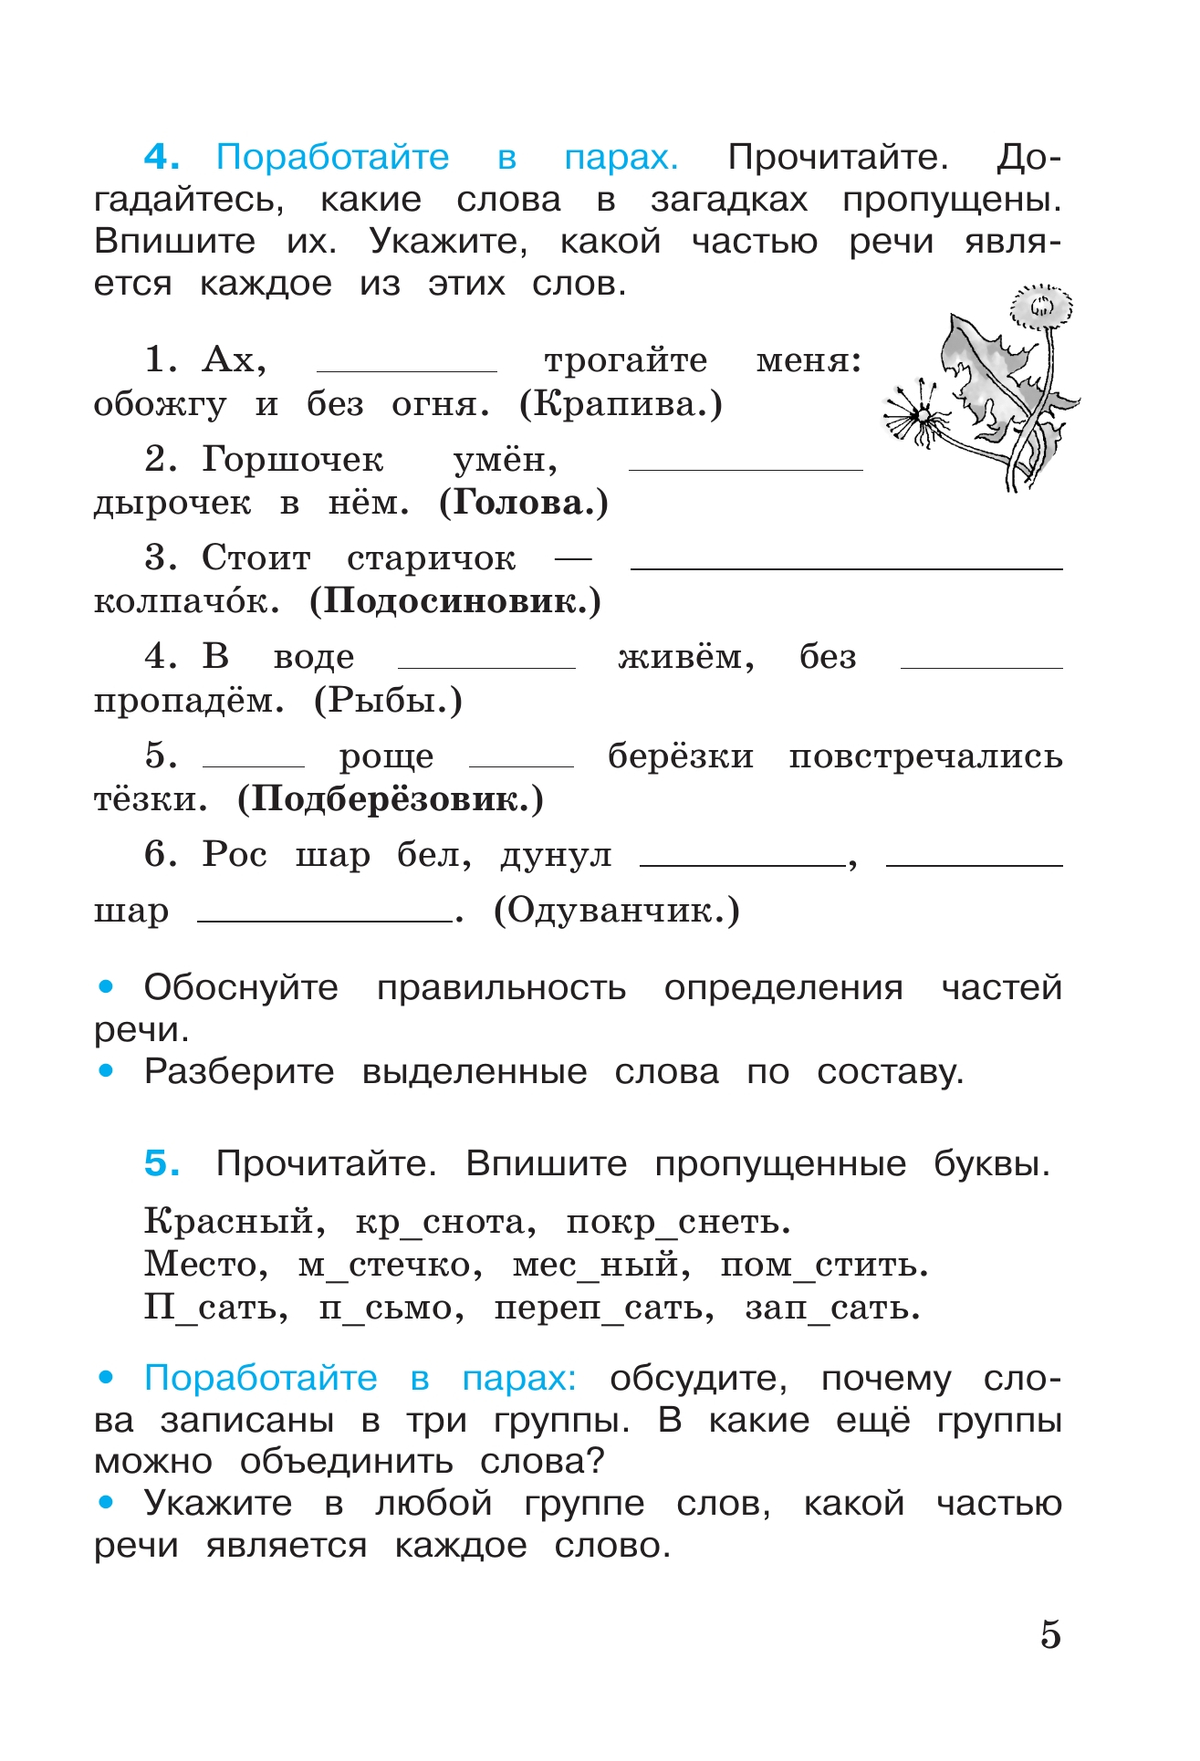 Русский язык. Рабочая тетрадь. 3 класс. В 2-х ч. Ч. 2 8